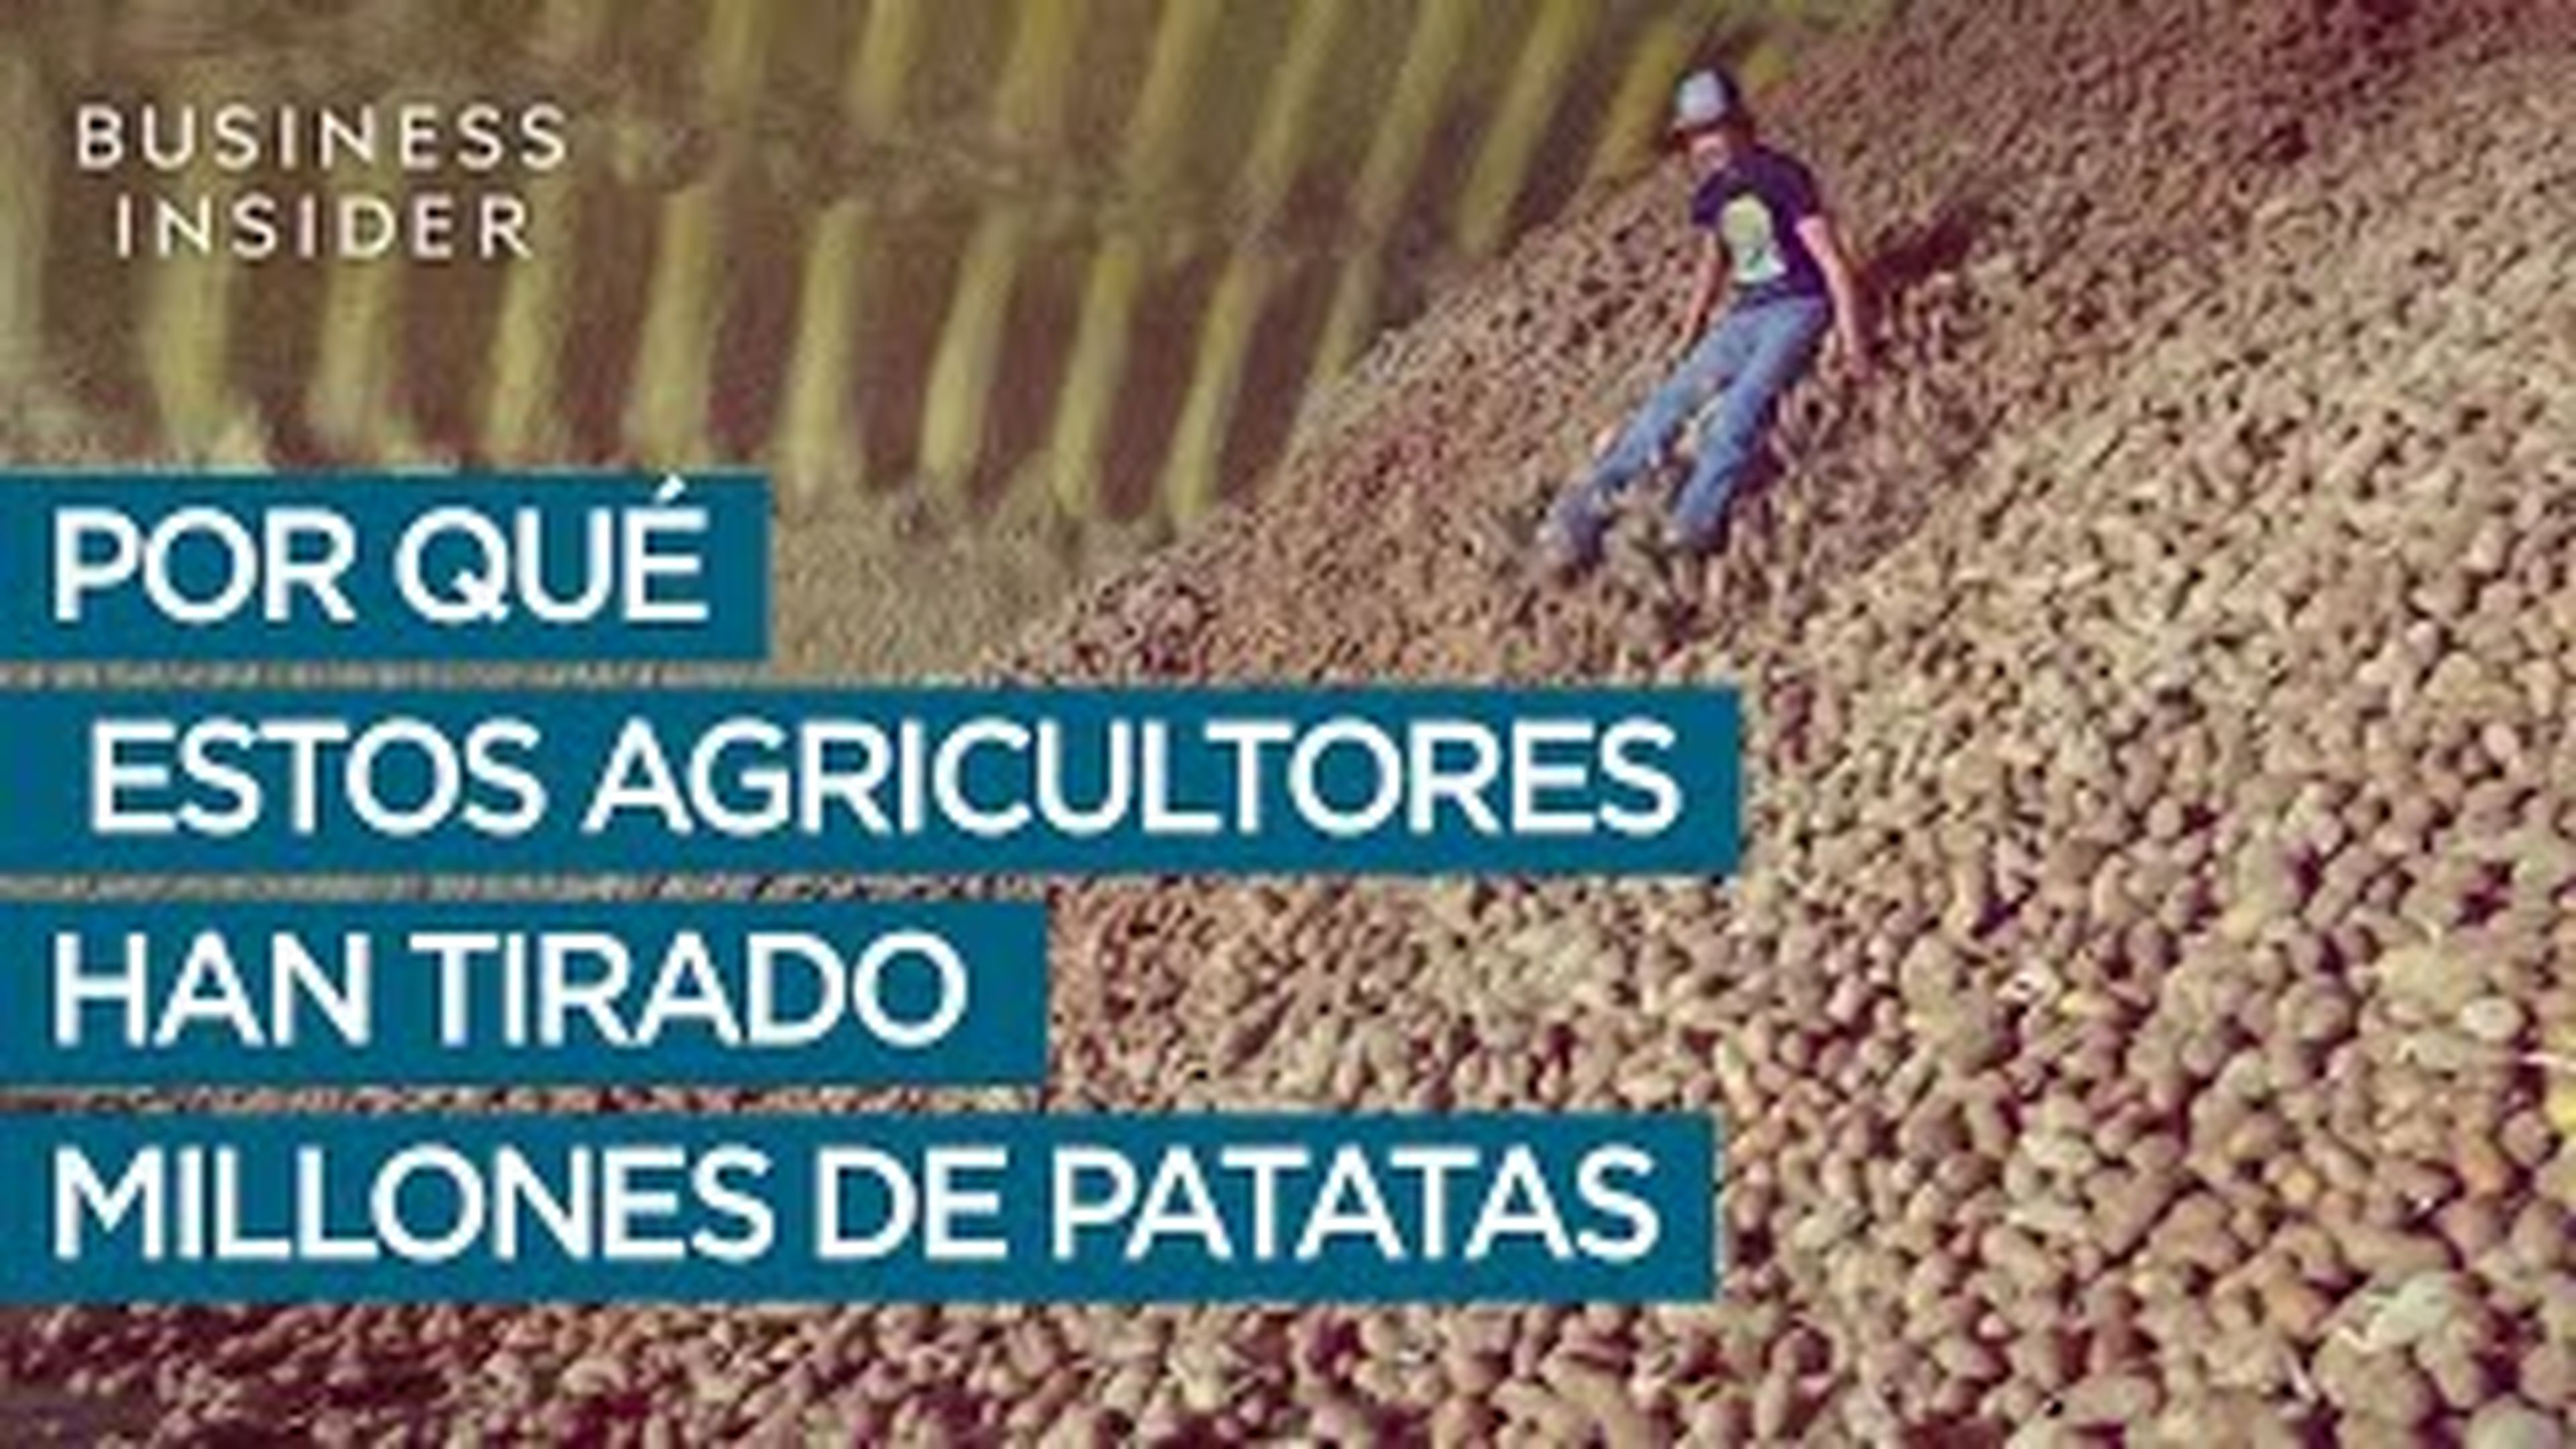 Por qué estos agricultores han tirado millones de patatas